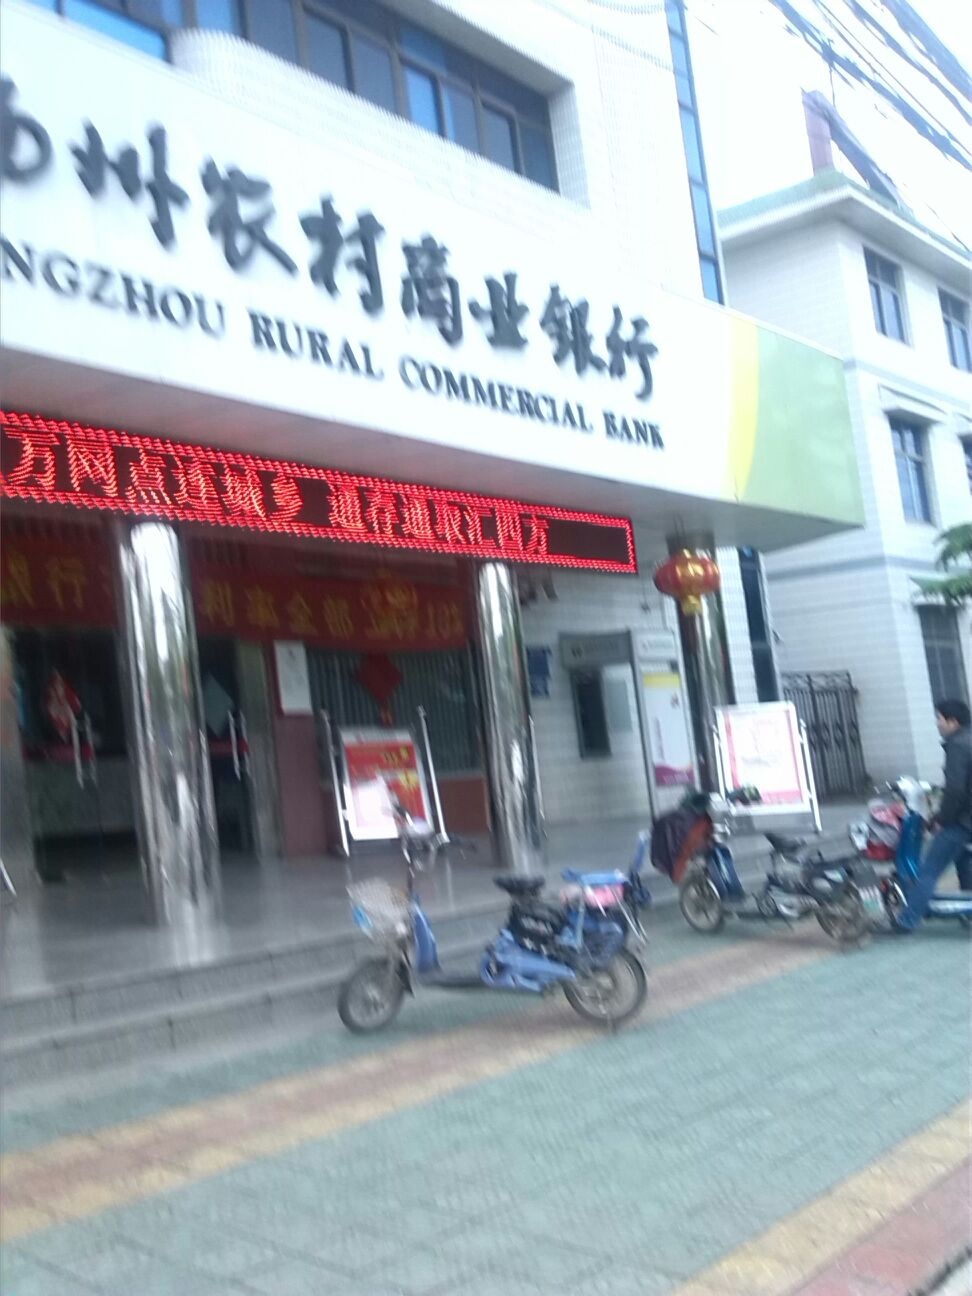 扬州农村商业银航(甘泉支行)